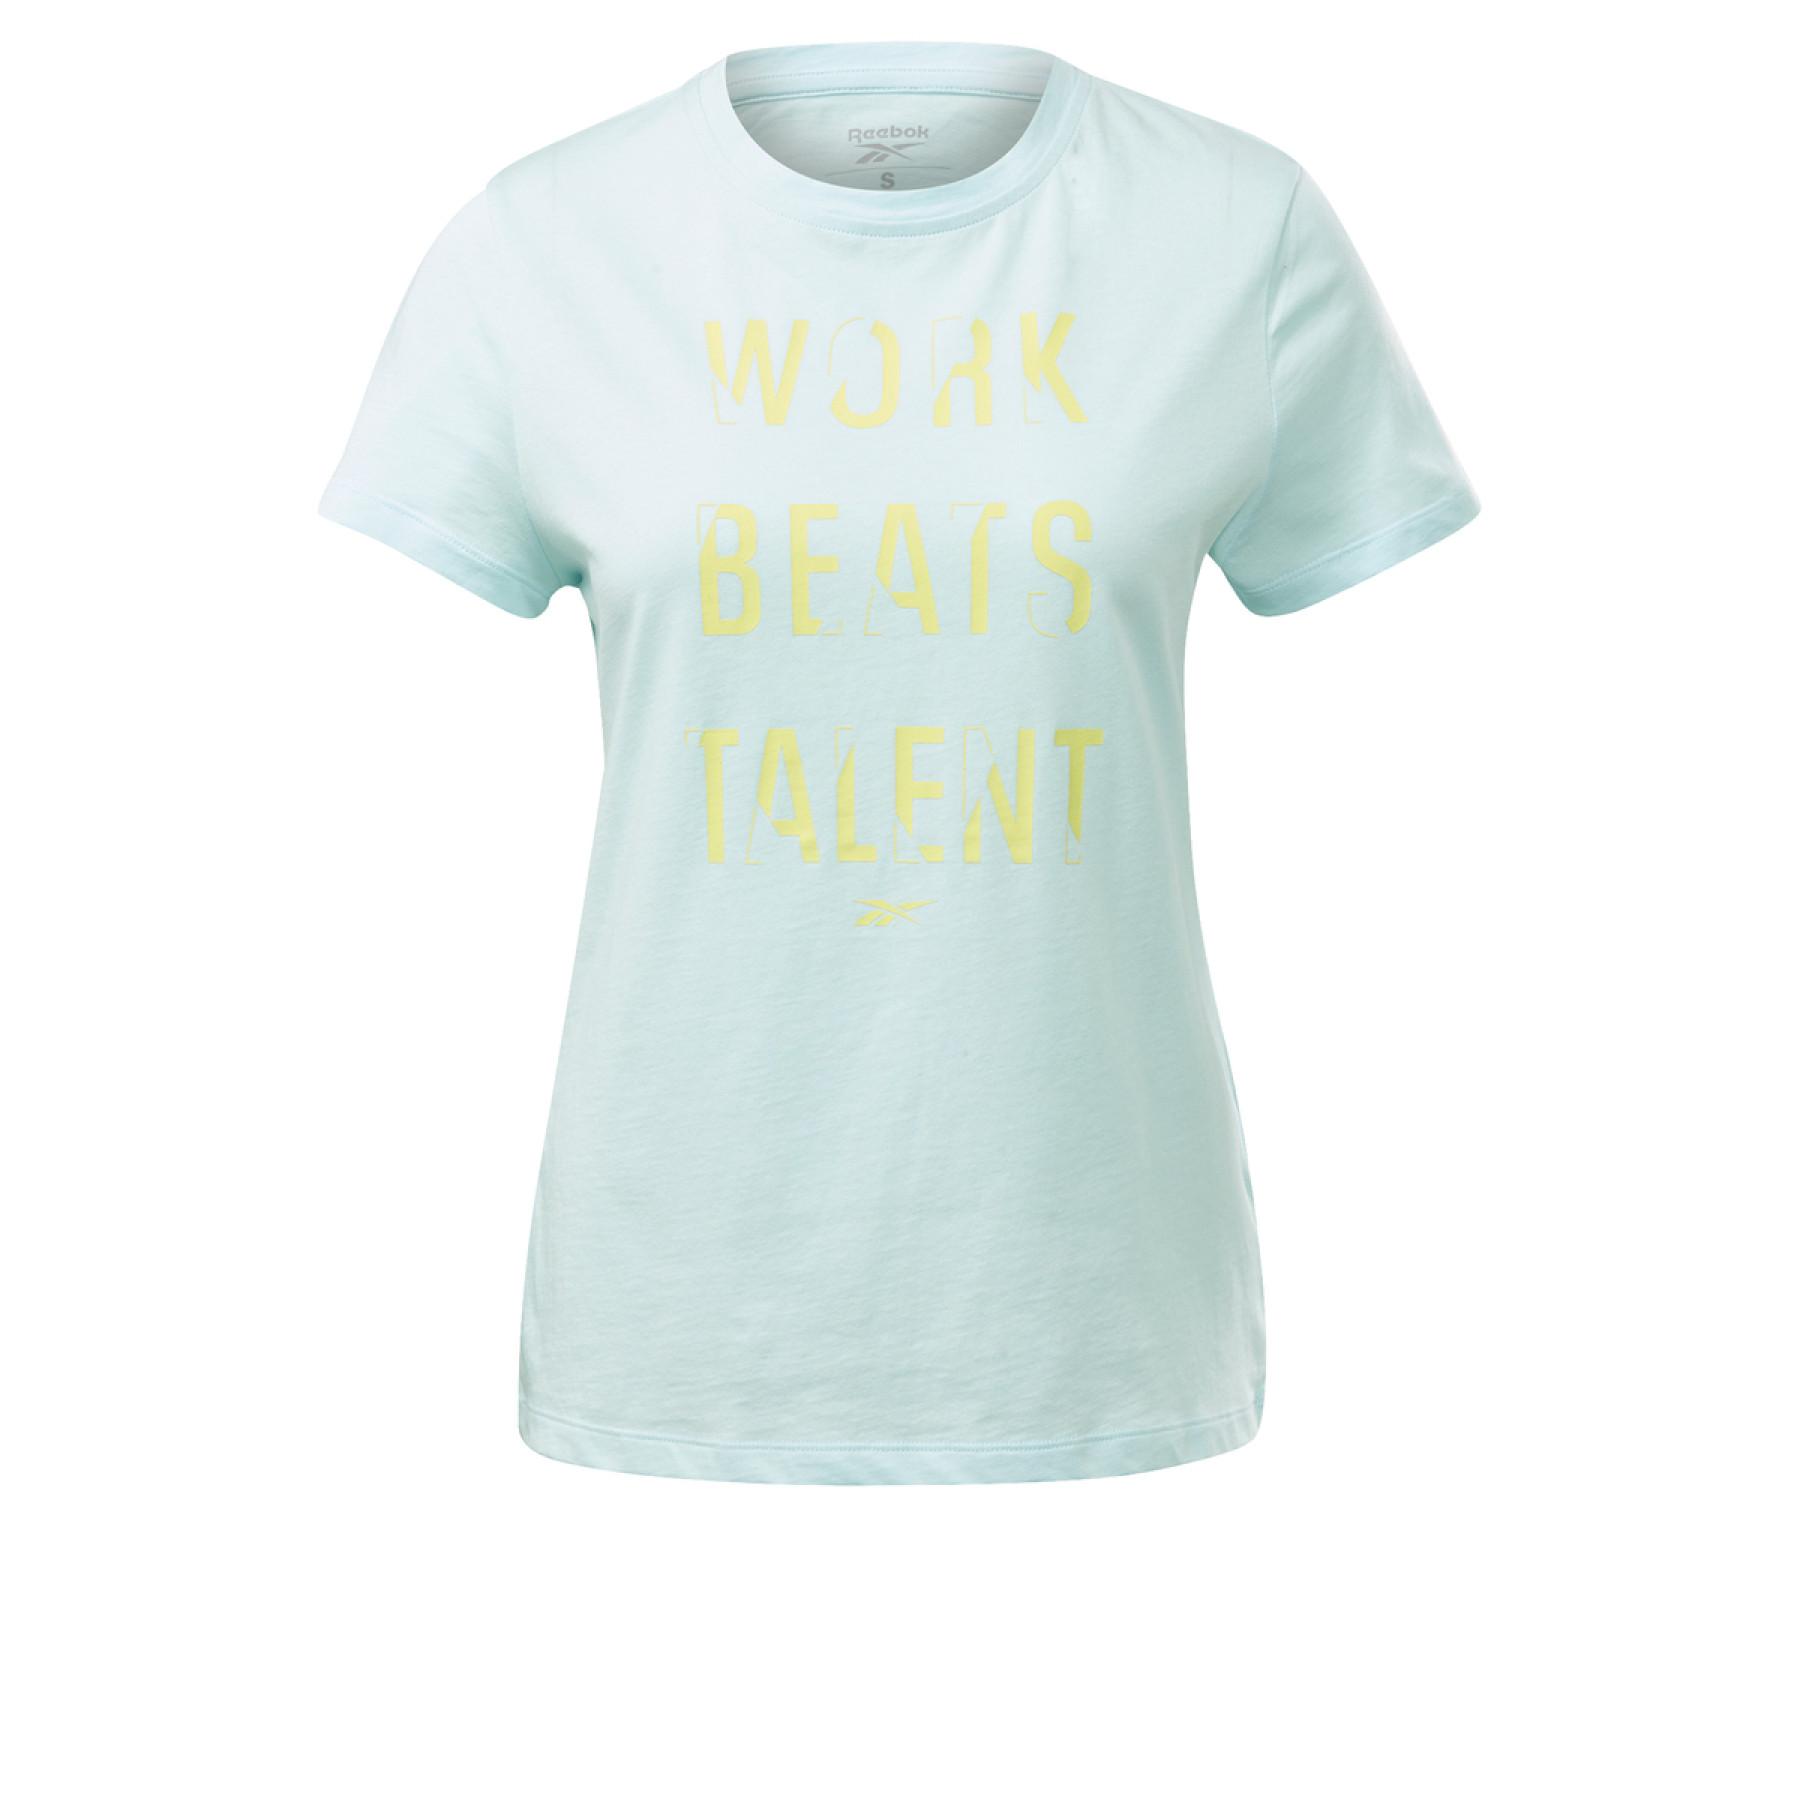 Women's T-shirt Reebok Work Beats Talent Graphic